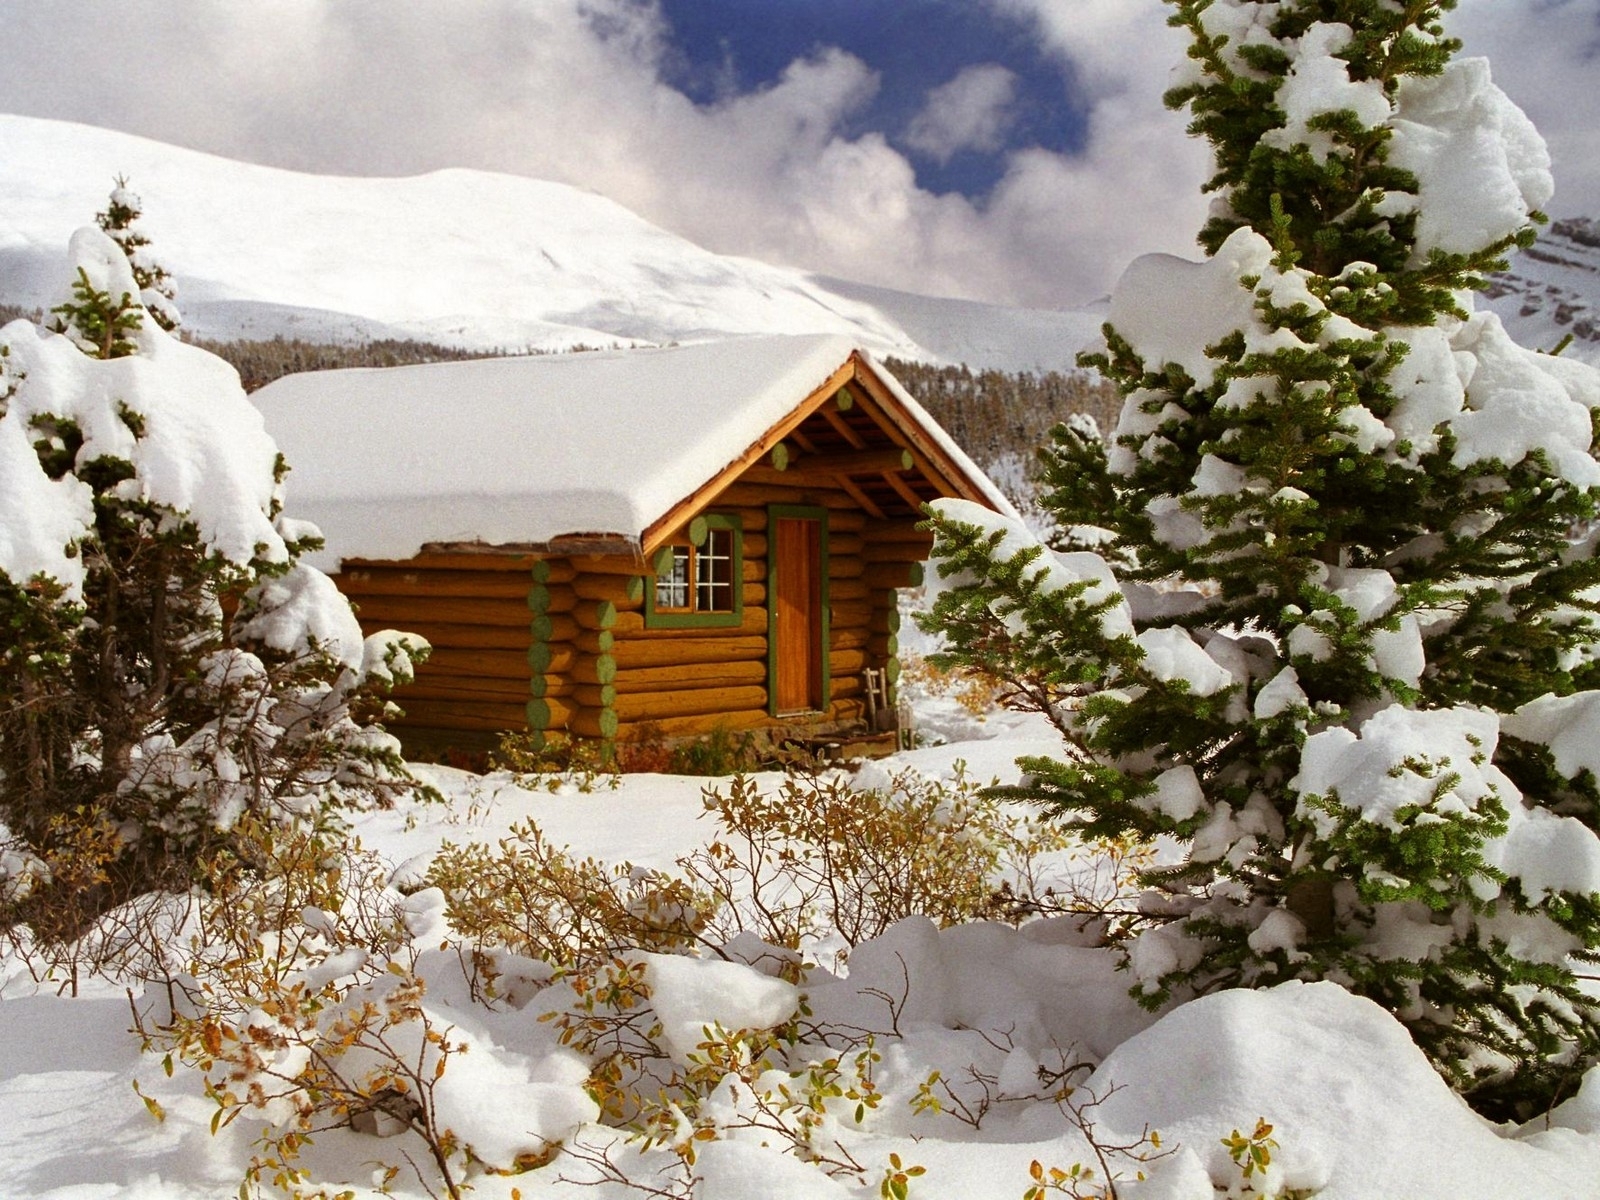 houses, landscape, winter, fir trees cellphone